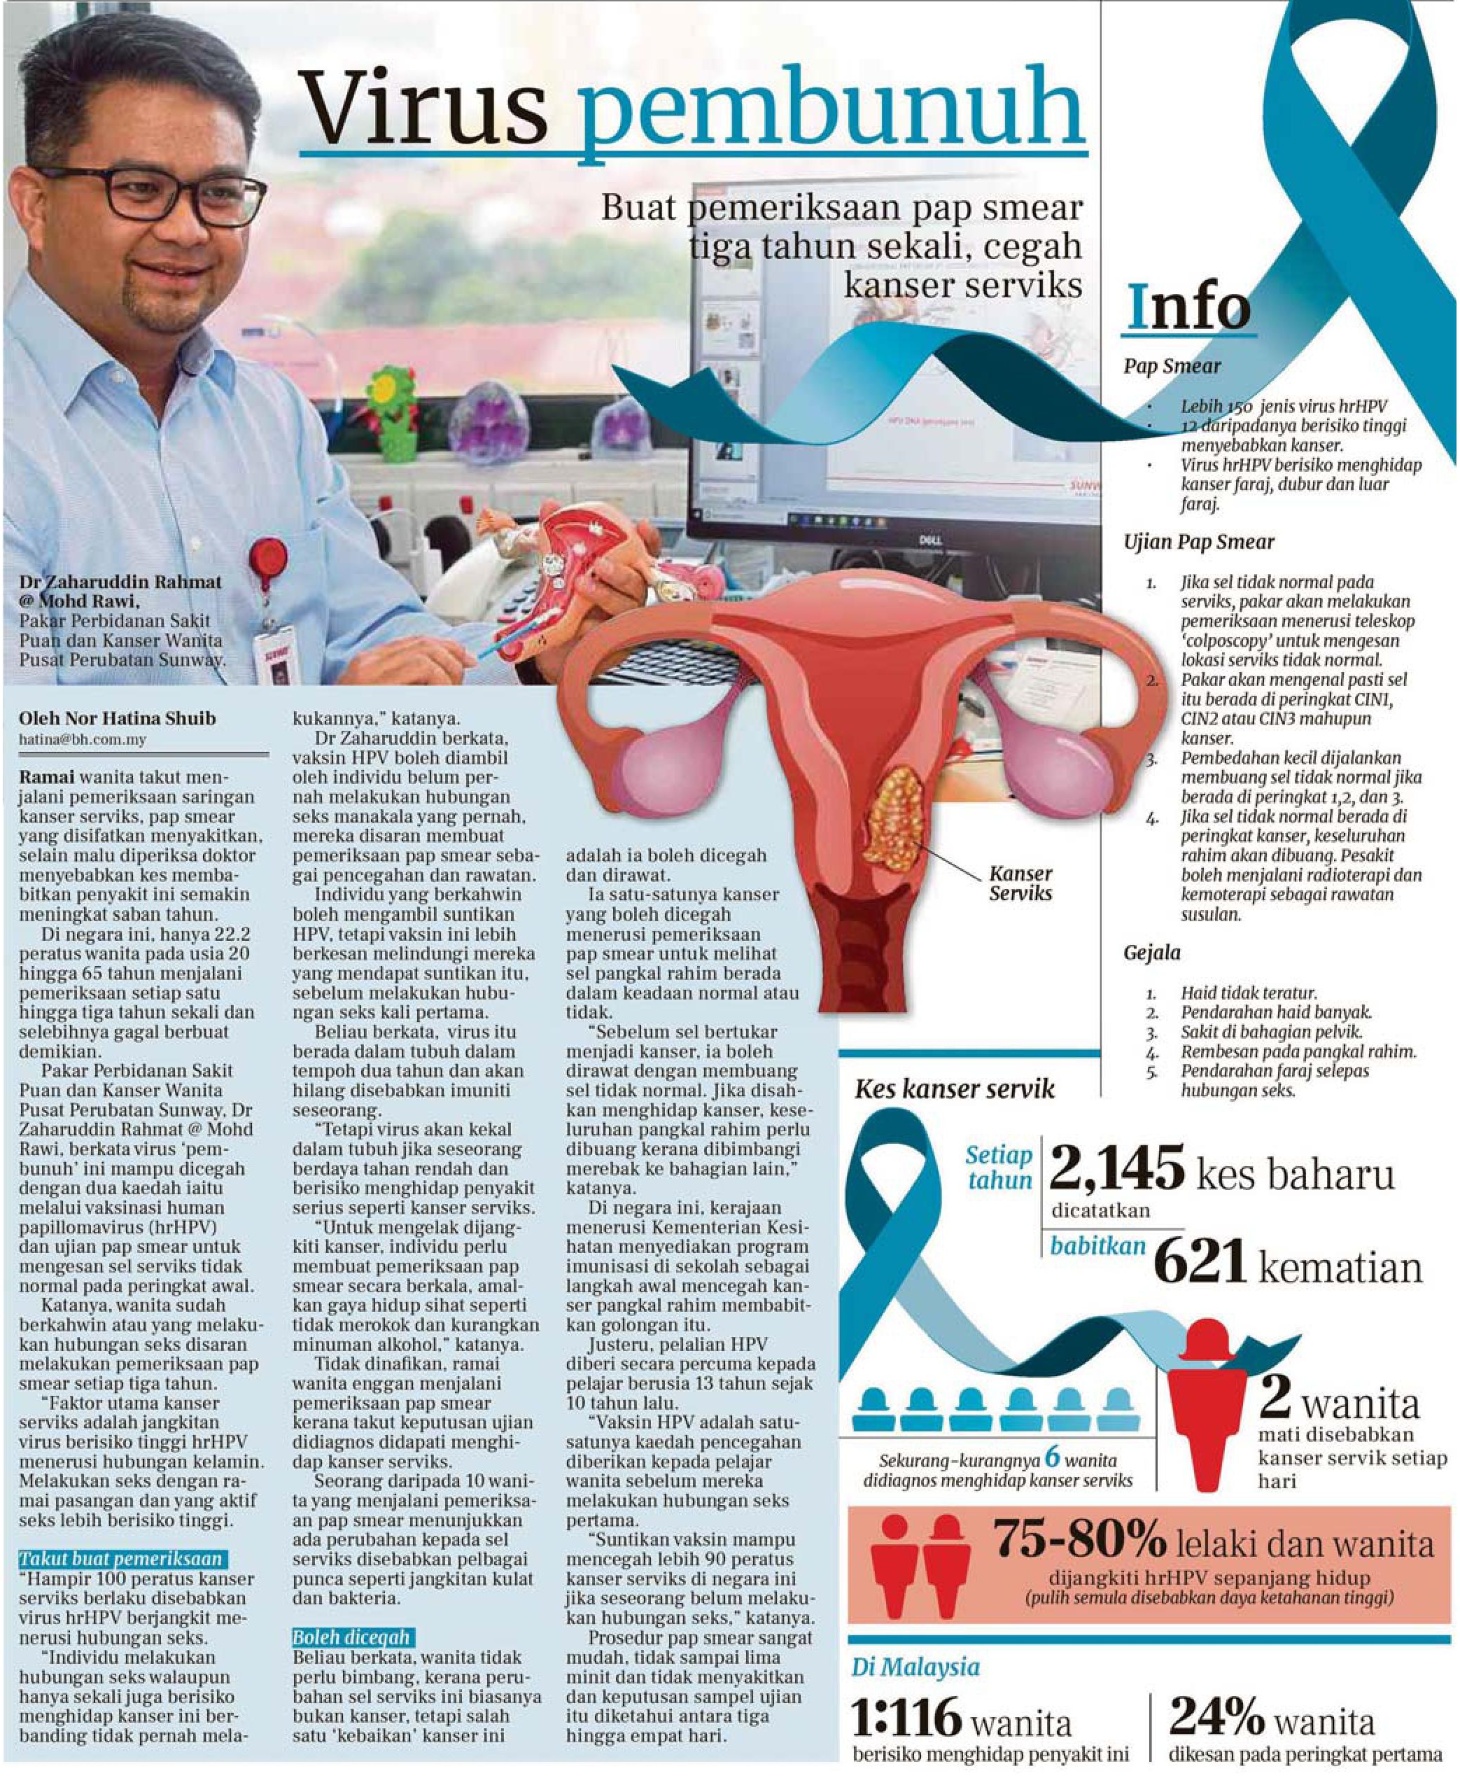 Preventing Cervical Cancer 